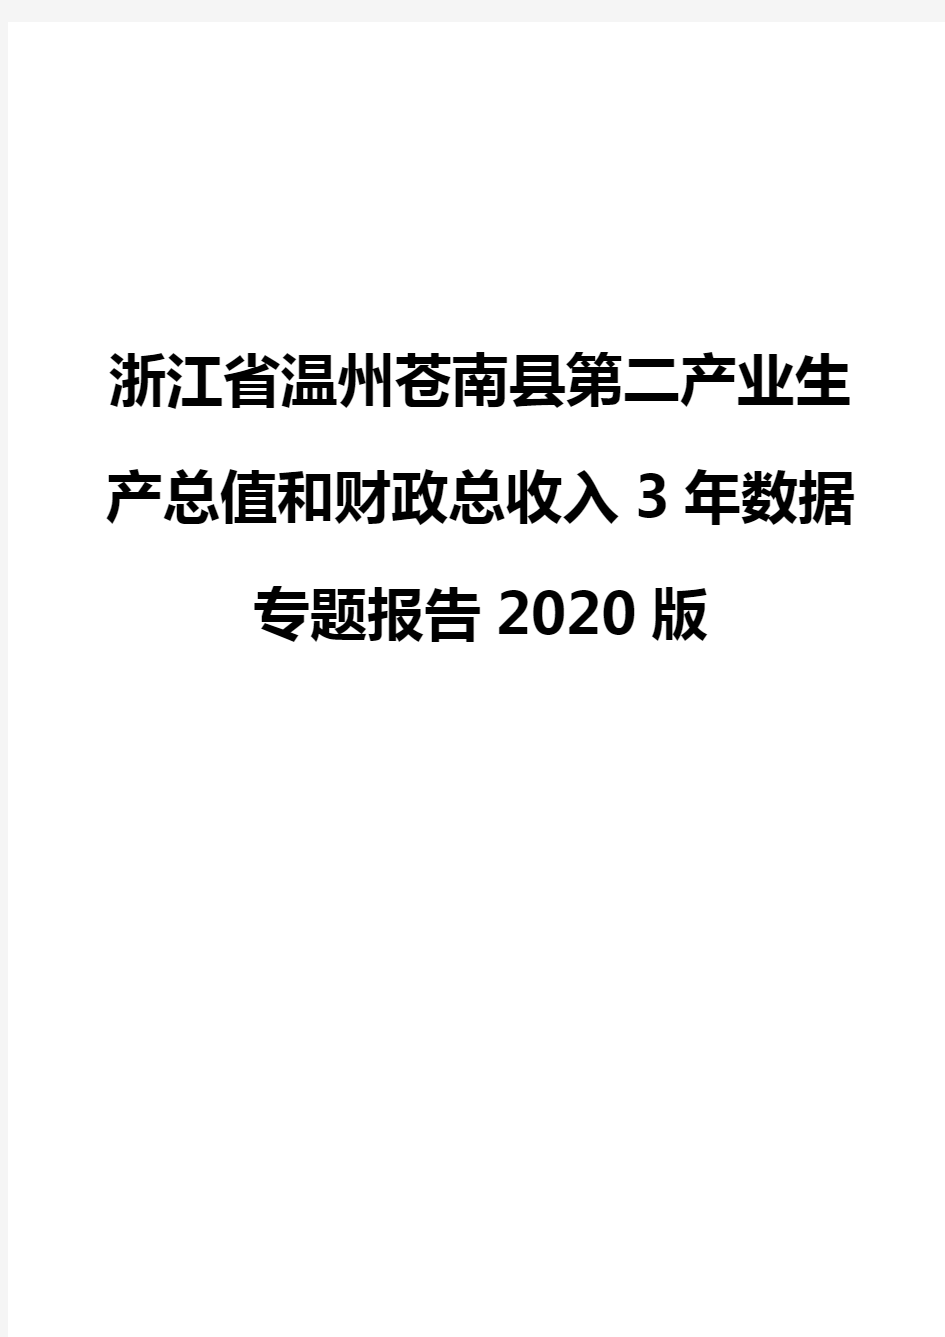 浙江省温州苍南县第二产业生产总值和财政总收入3年数据专题报告2020版